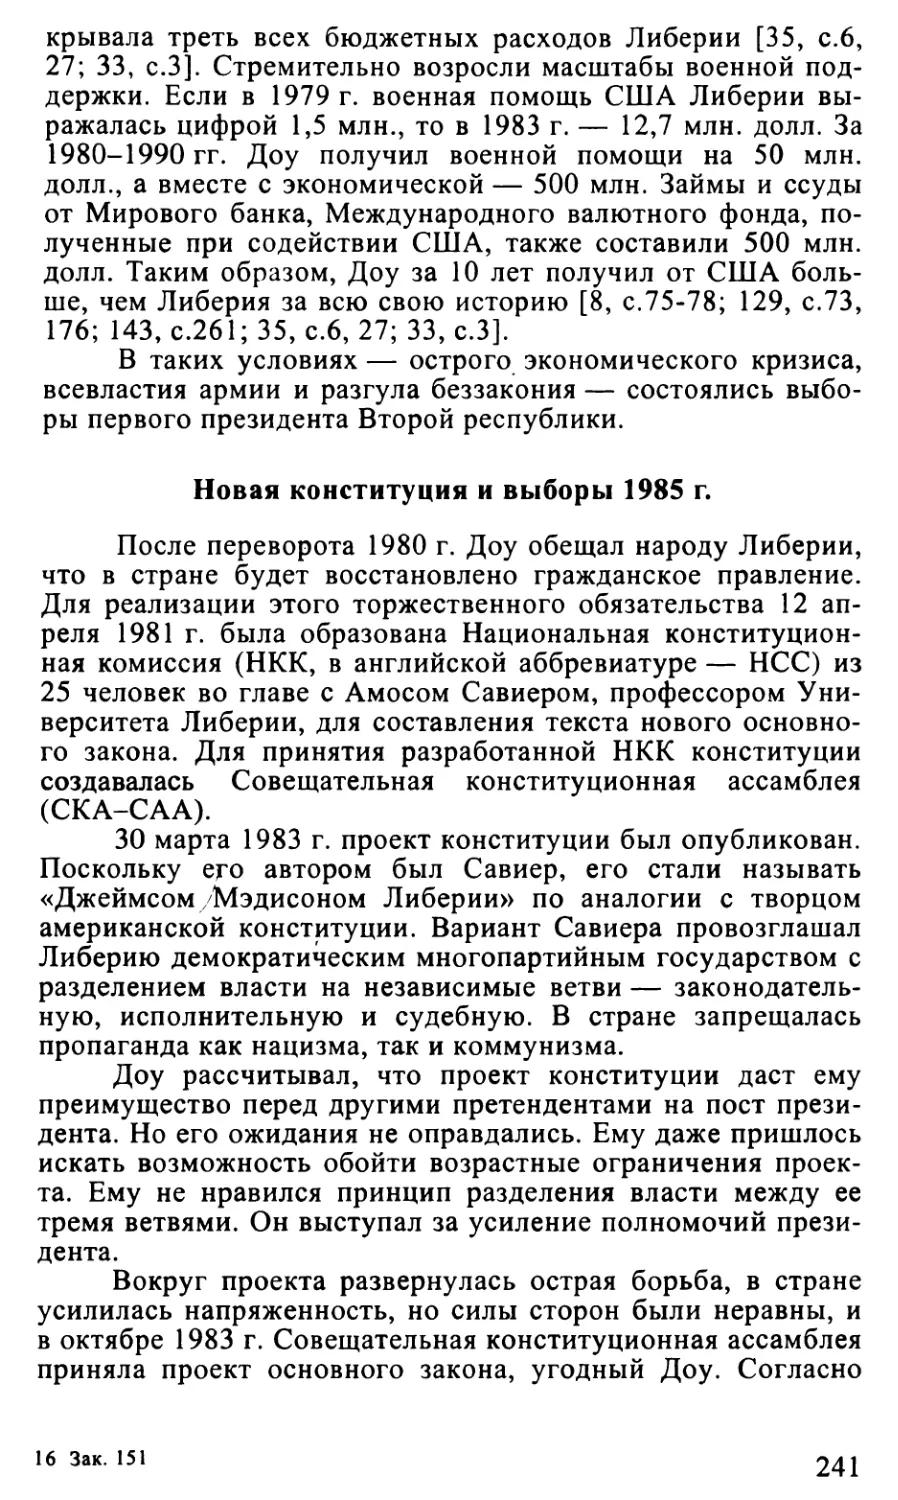 Новая конституция и выборы 1985 г.